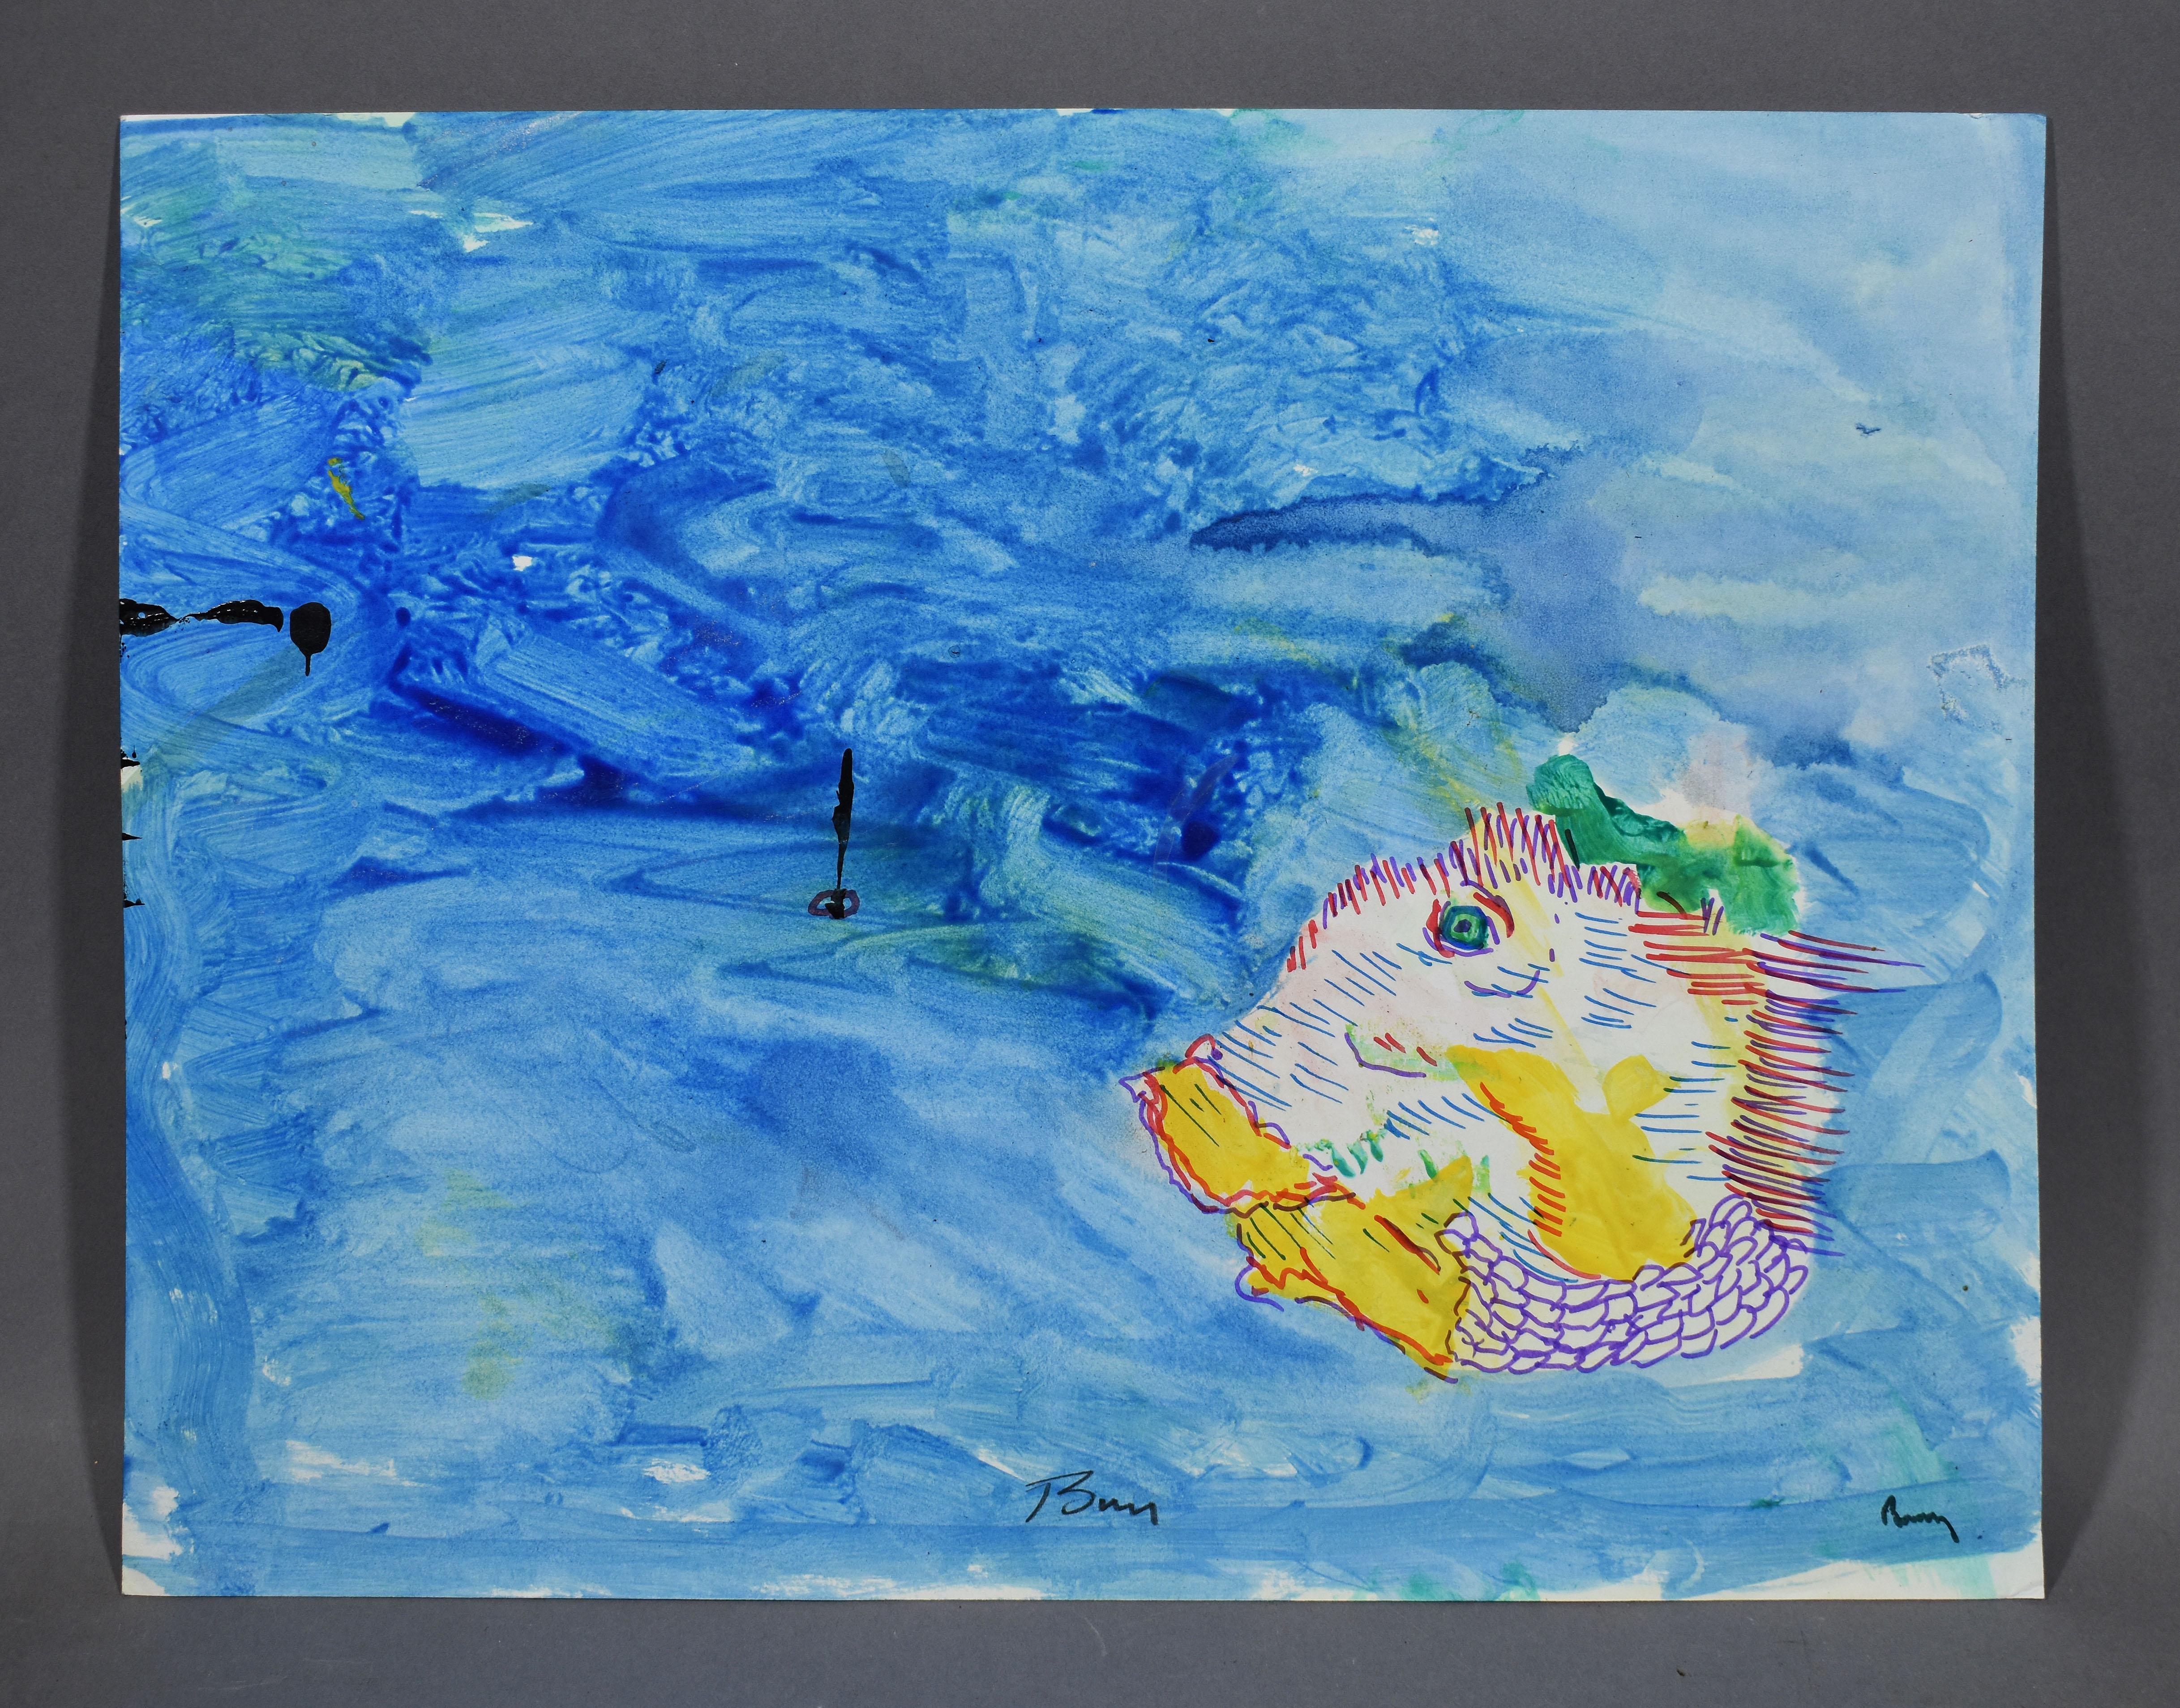  Abstraktes Meeresfisch-Gemälde der American School, New York City, Abstrakter Magic Surrealismus – Painting von Barry Johnson